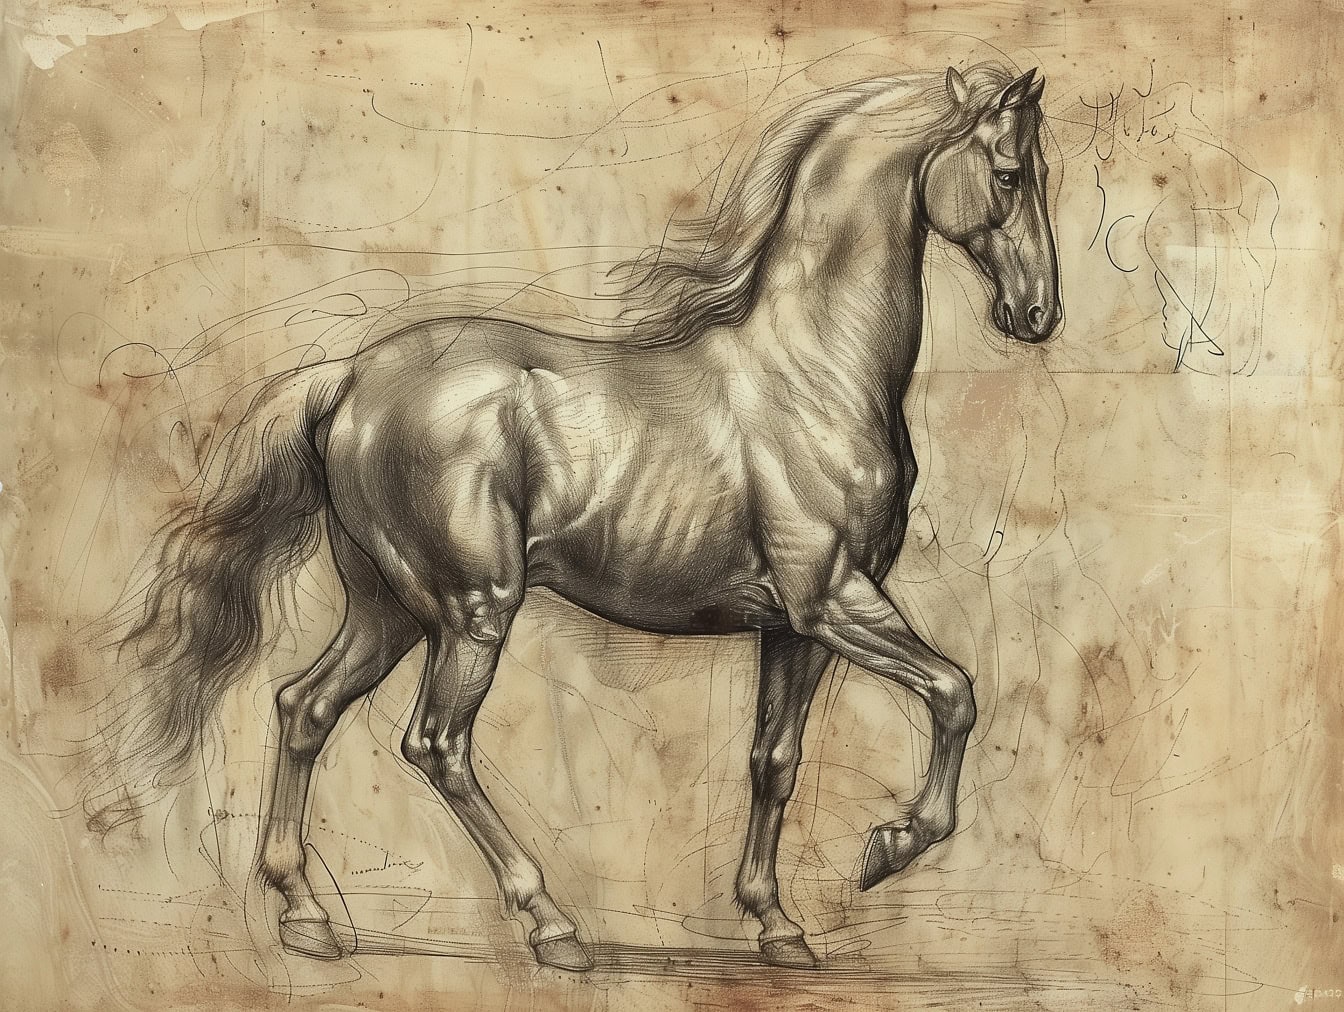 Grafitowy szkic konia lipicańskiego z ładnym cieniowaniem w stylu średniowiecznego rysunku artystycznego